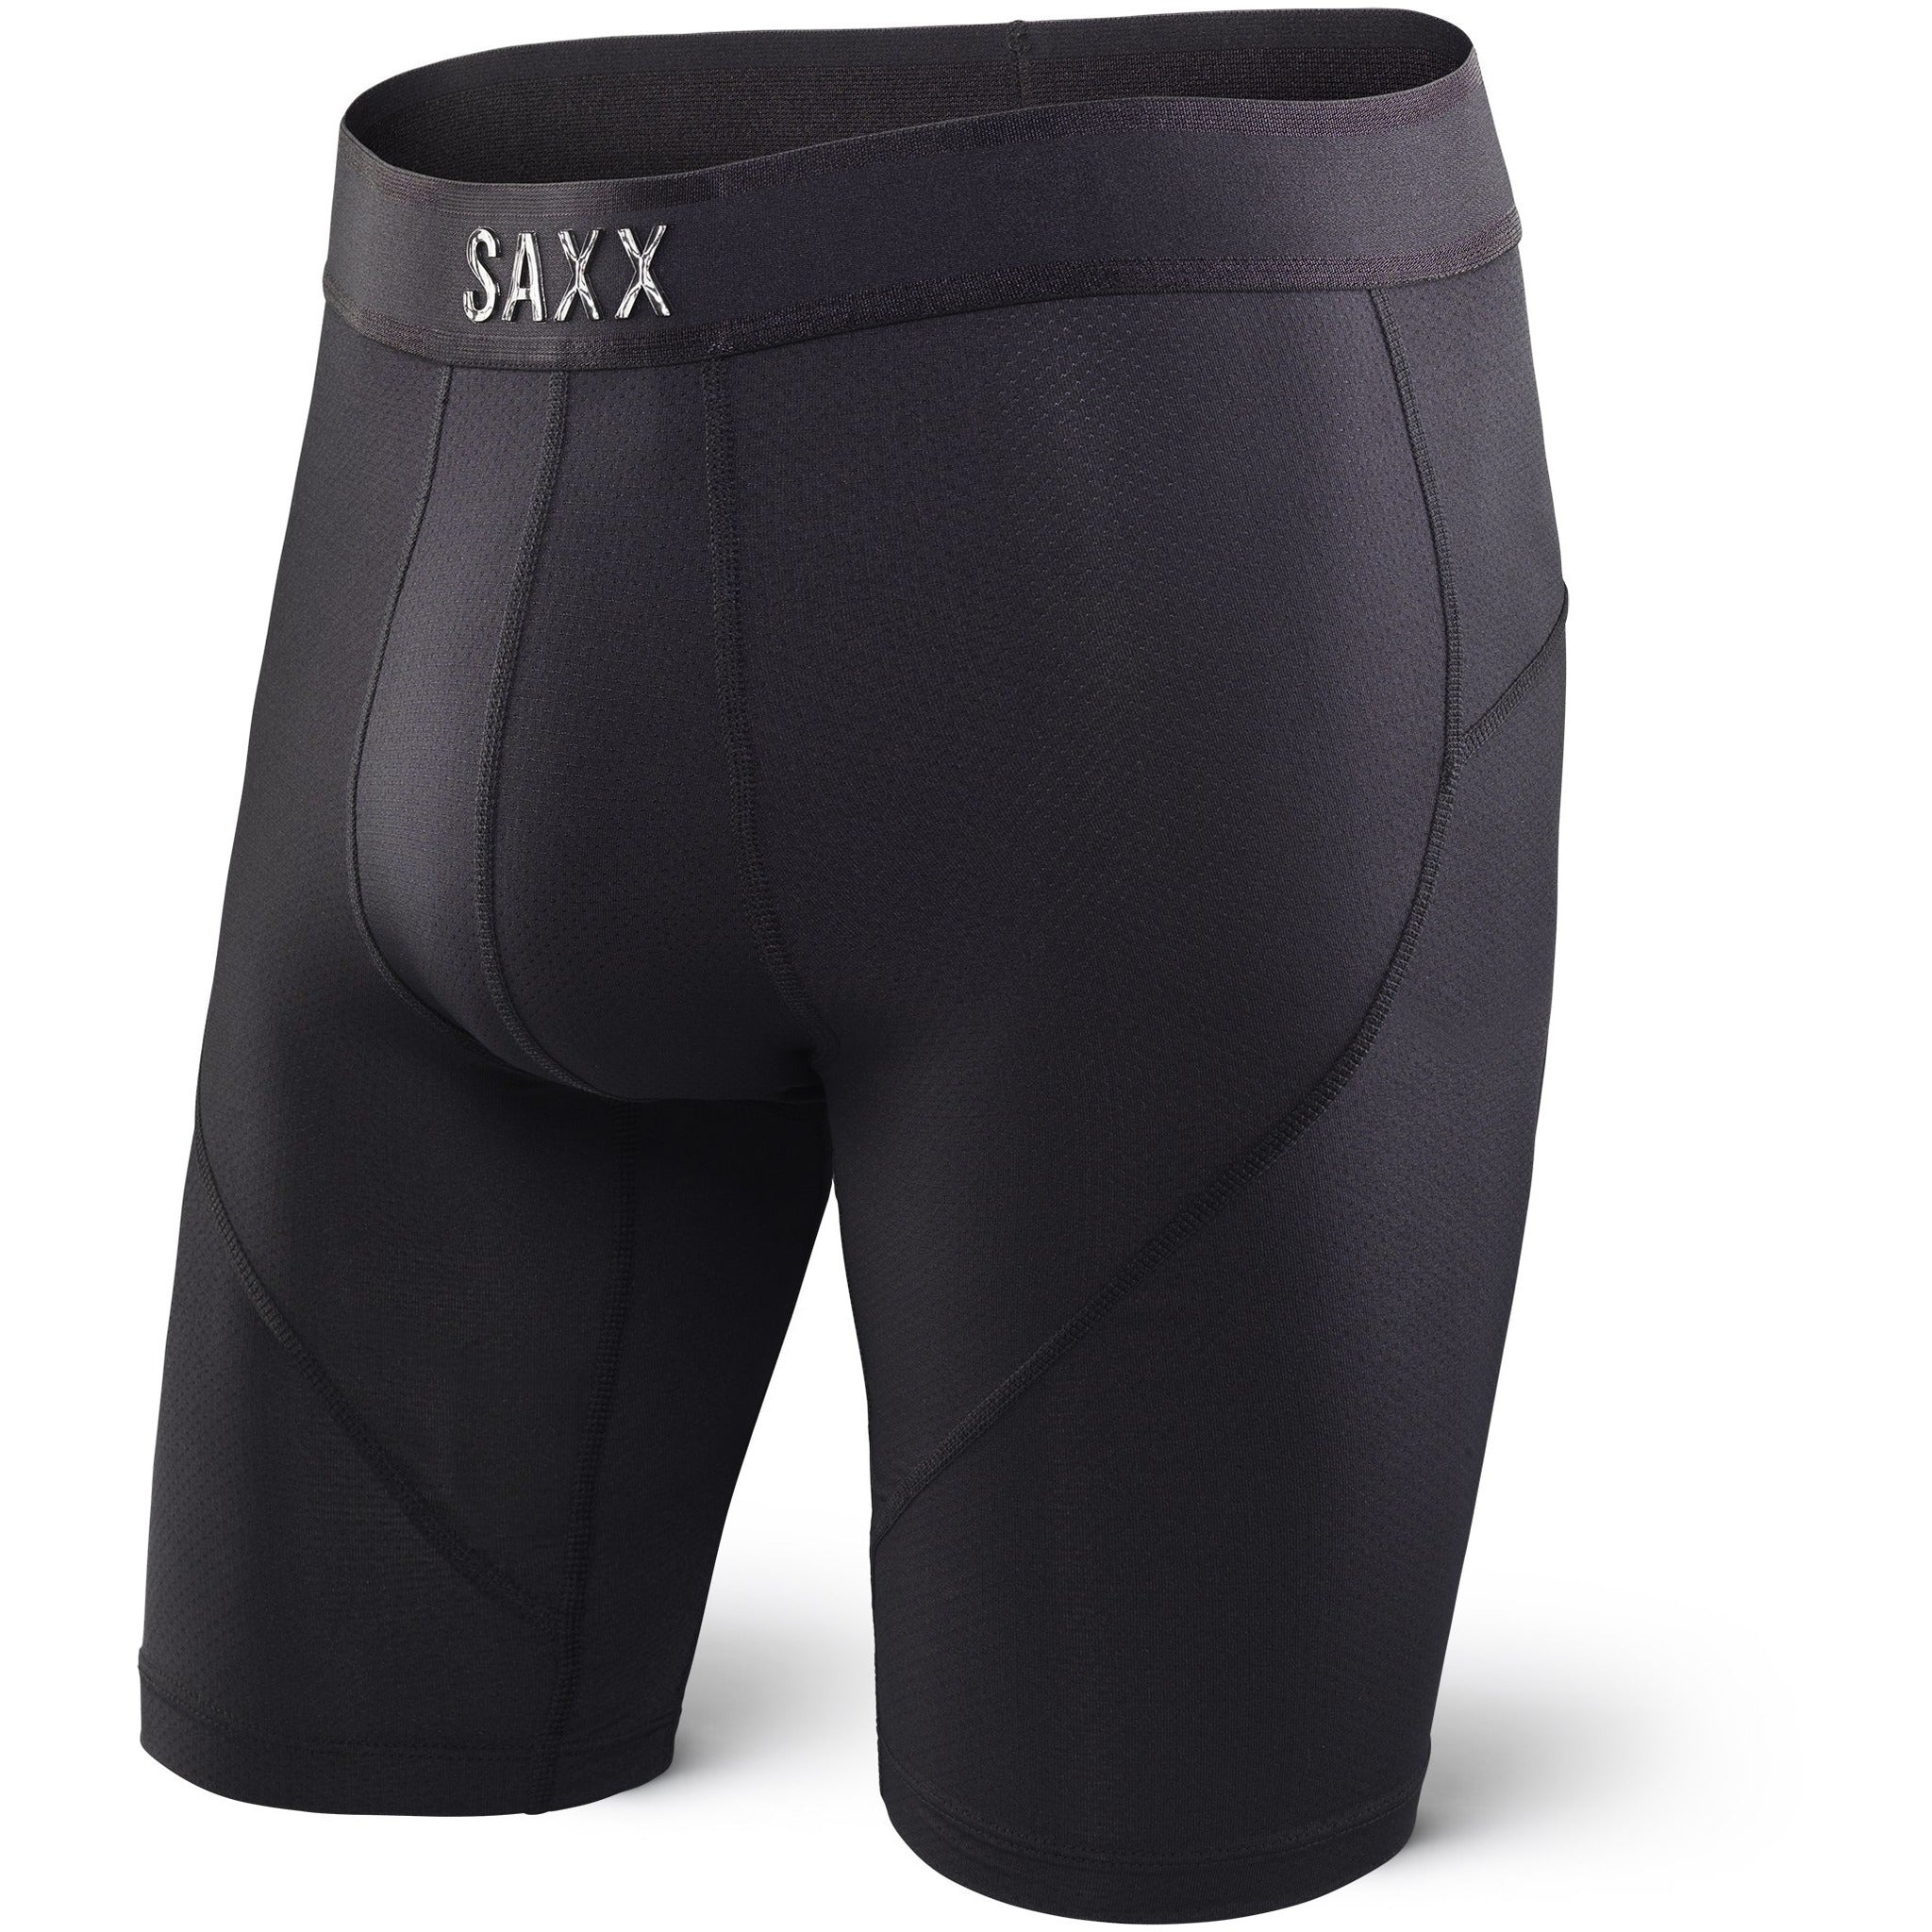 SAXX Kinetic Stretch Boxer Briefs - Men's Boxers in Optic Camo Black